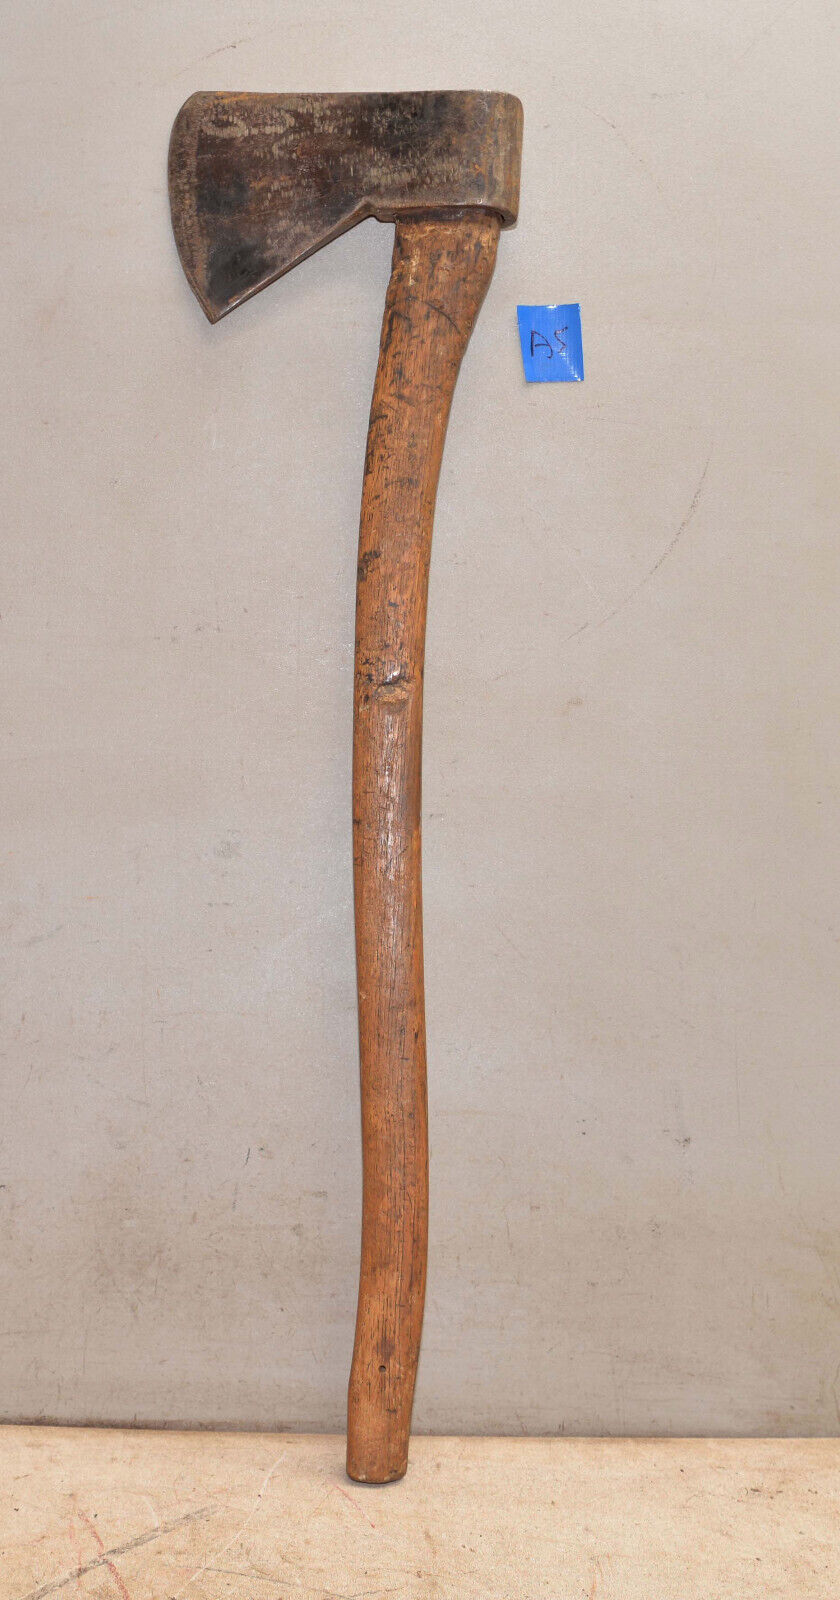 Huge 6 lb head european felling axe fir trade logging collectible ax tool A5